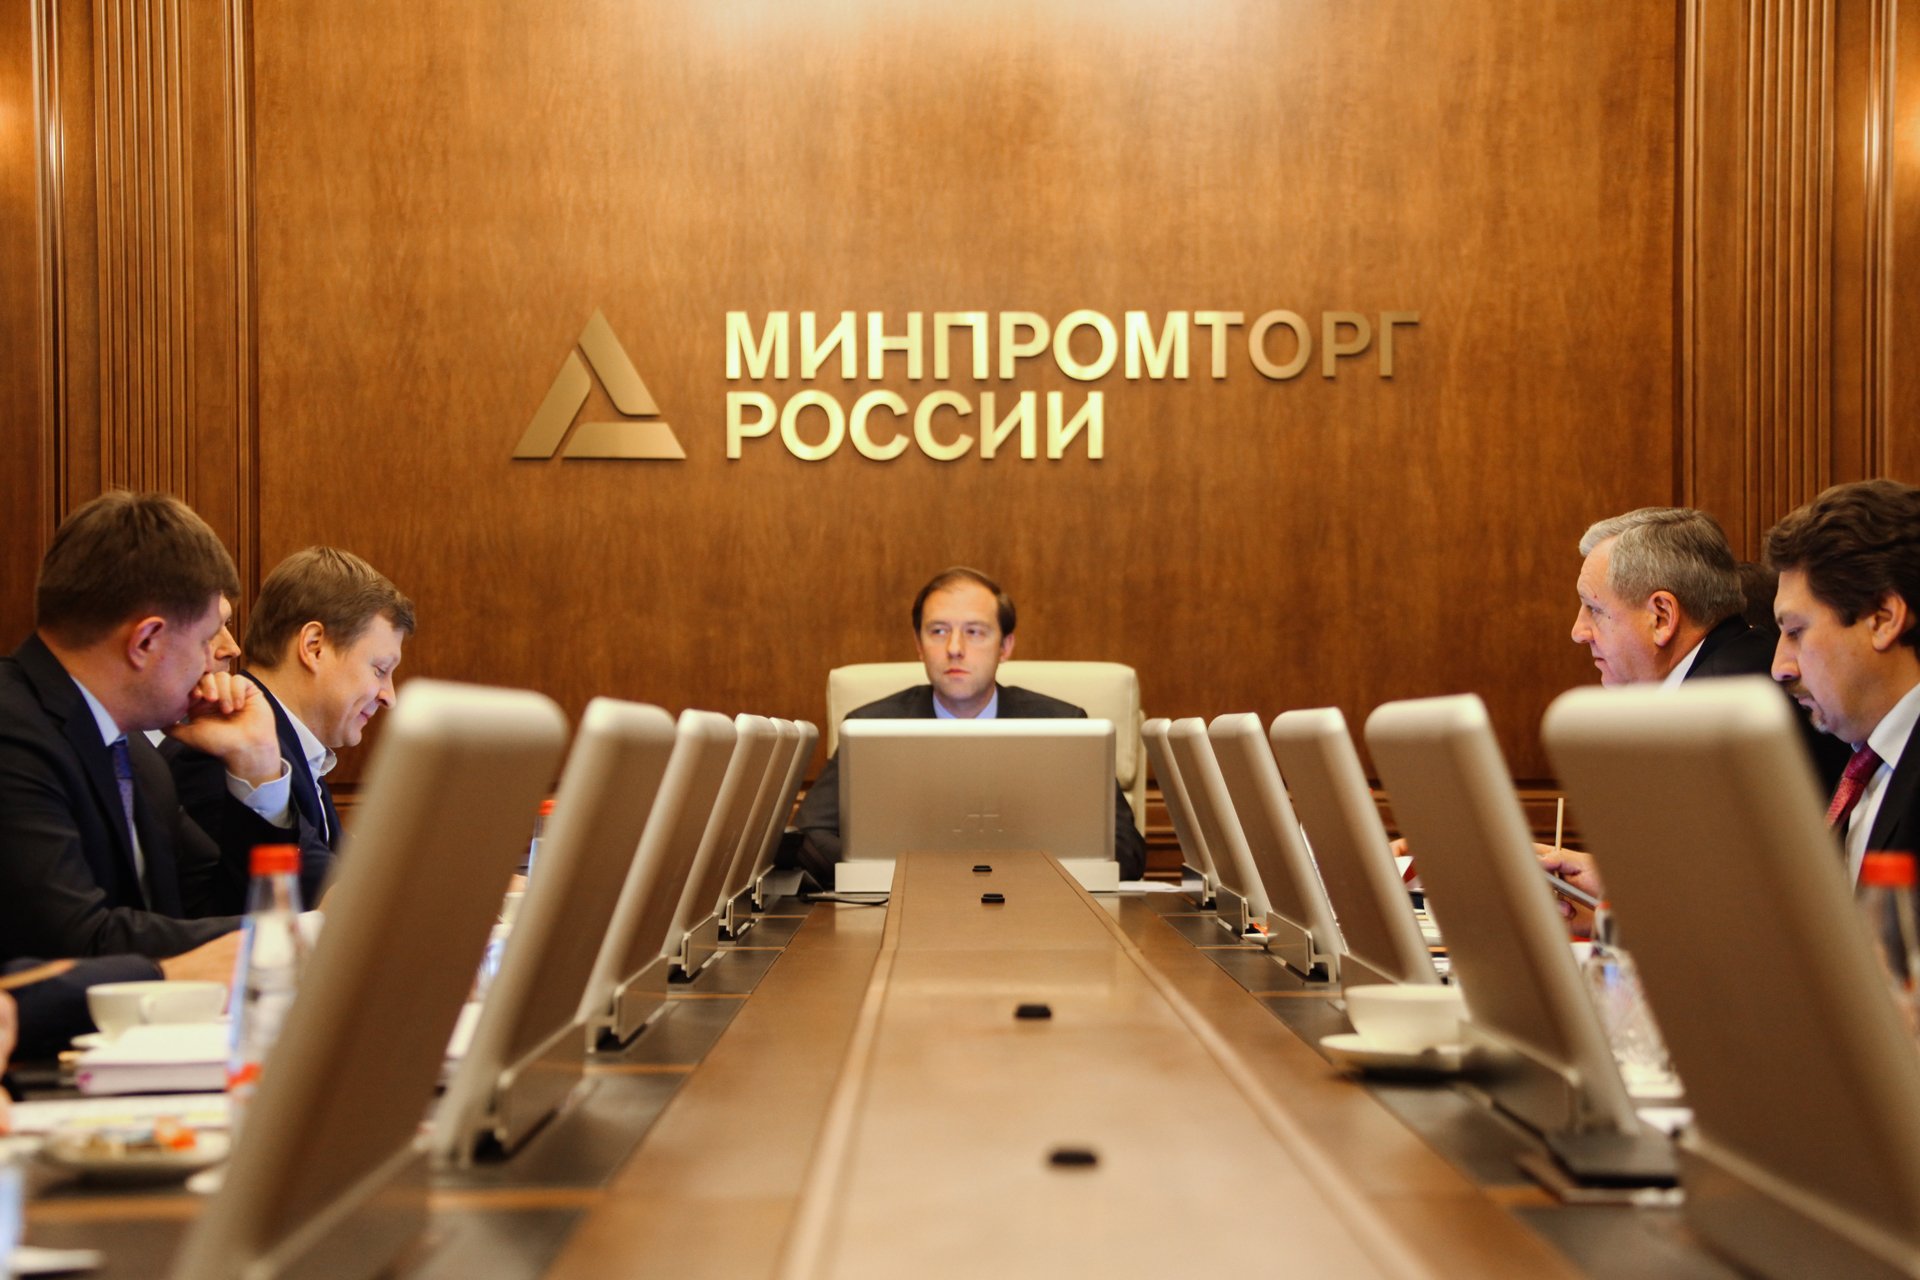 Минпромторг выделил 10,7 млрд. рублей на поддержку и развитие промышленности